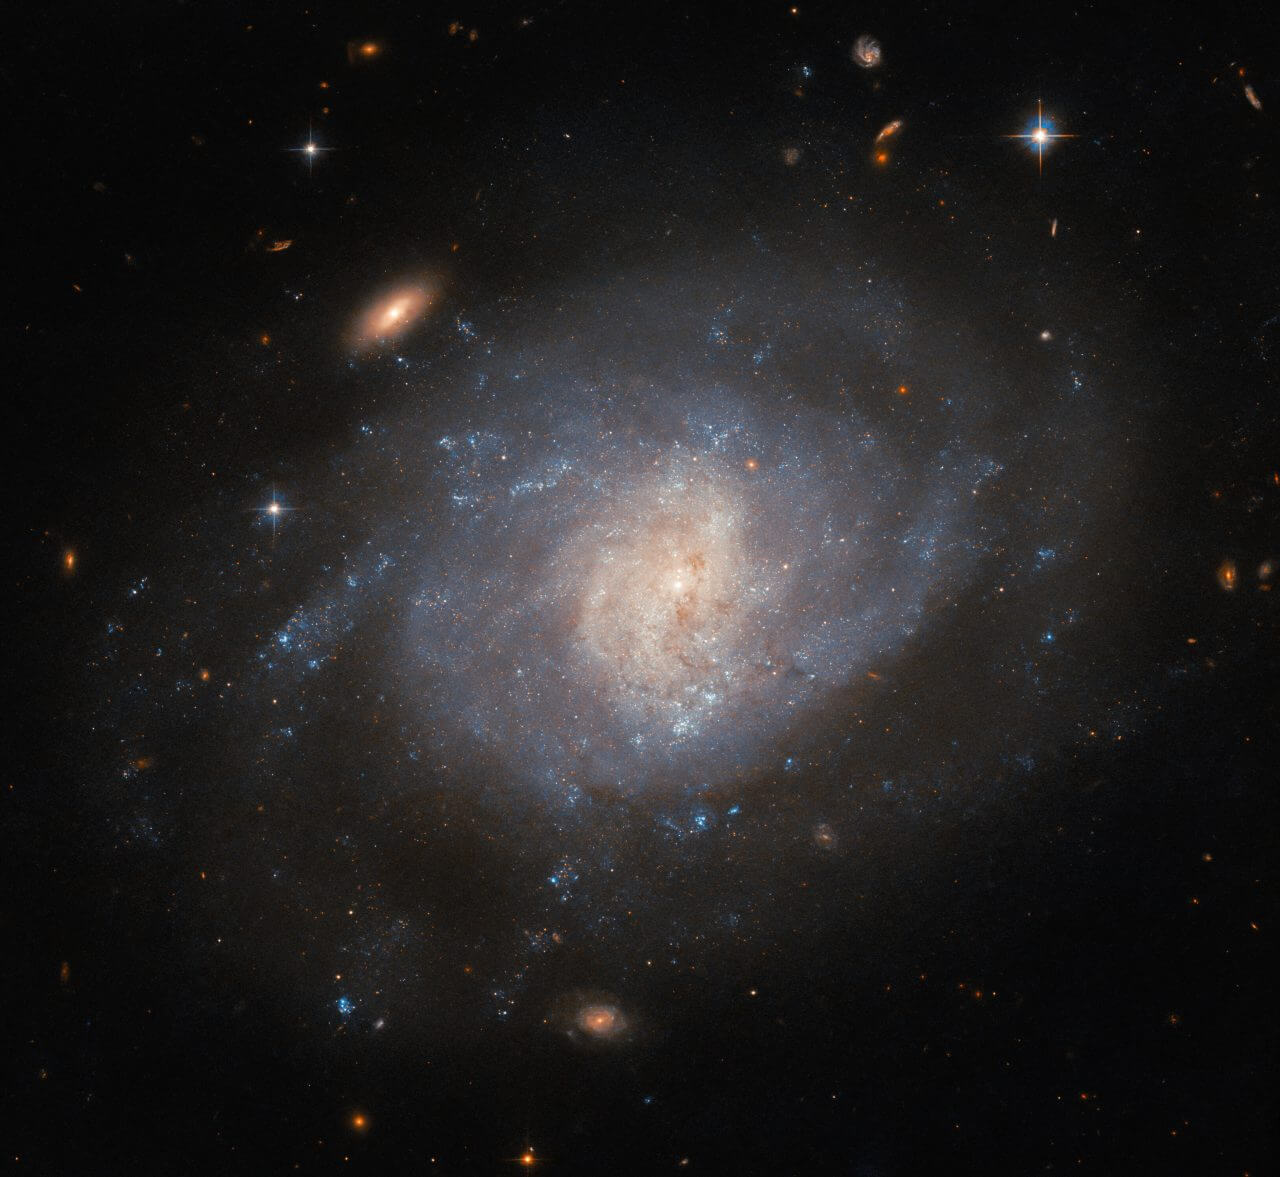 渦巻腕が溶け合っているような“くじら座”の銀河 ハッブル宇宙望遠鏡が撮影